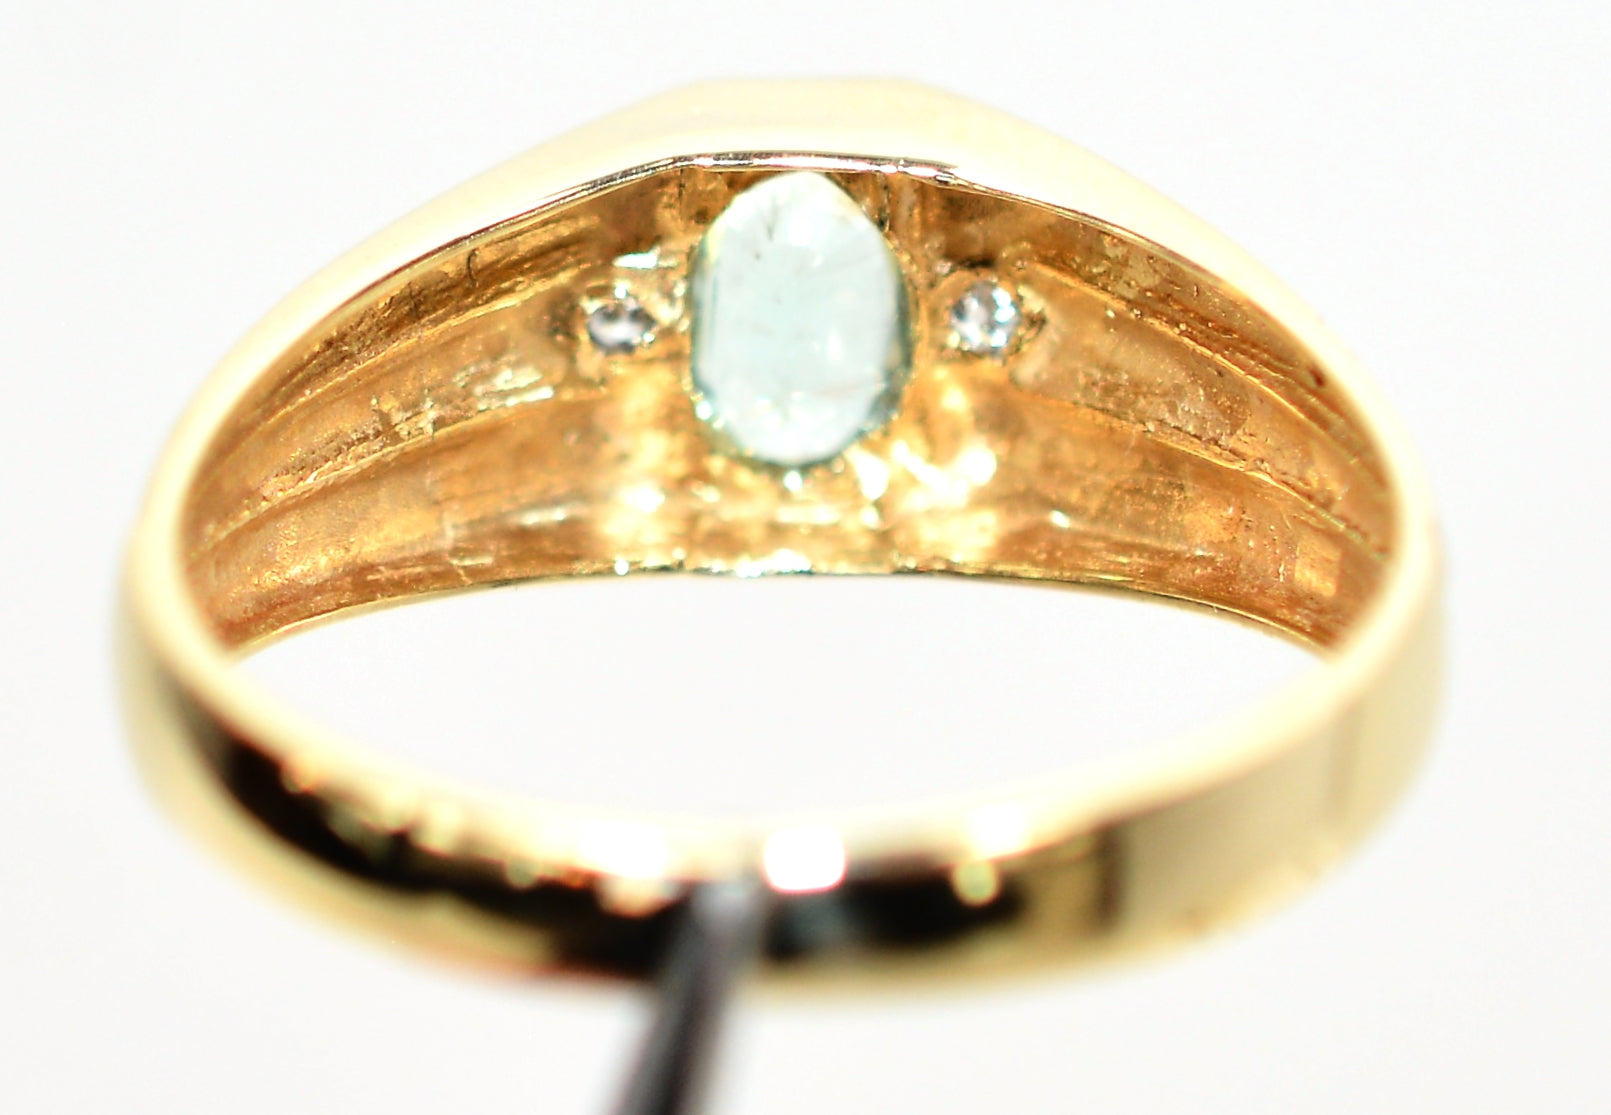 Natural Paraiba Tourmaline & Diamond Ring 10K Solid Gold .44tcw Men's Ring Gemstone Ring Birthstone Ring Statement Ring Cocktail Ring Estate